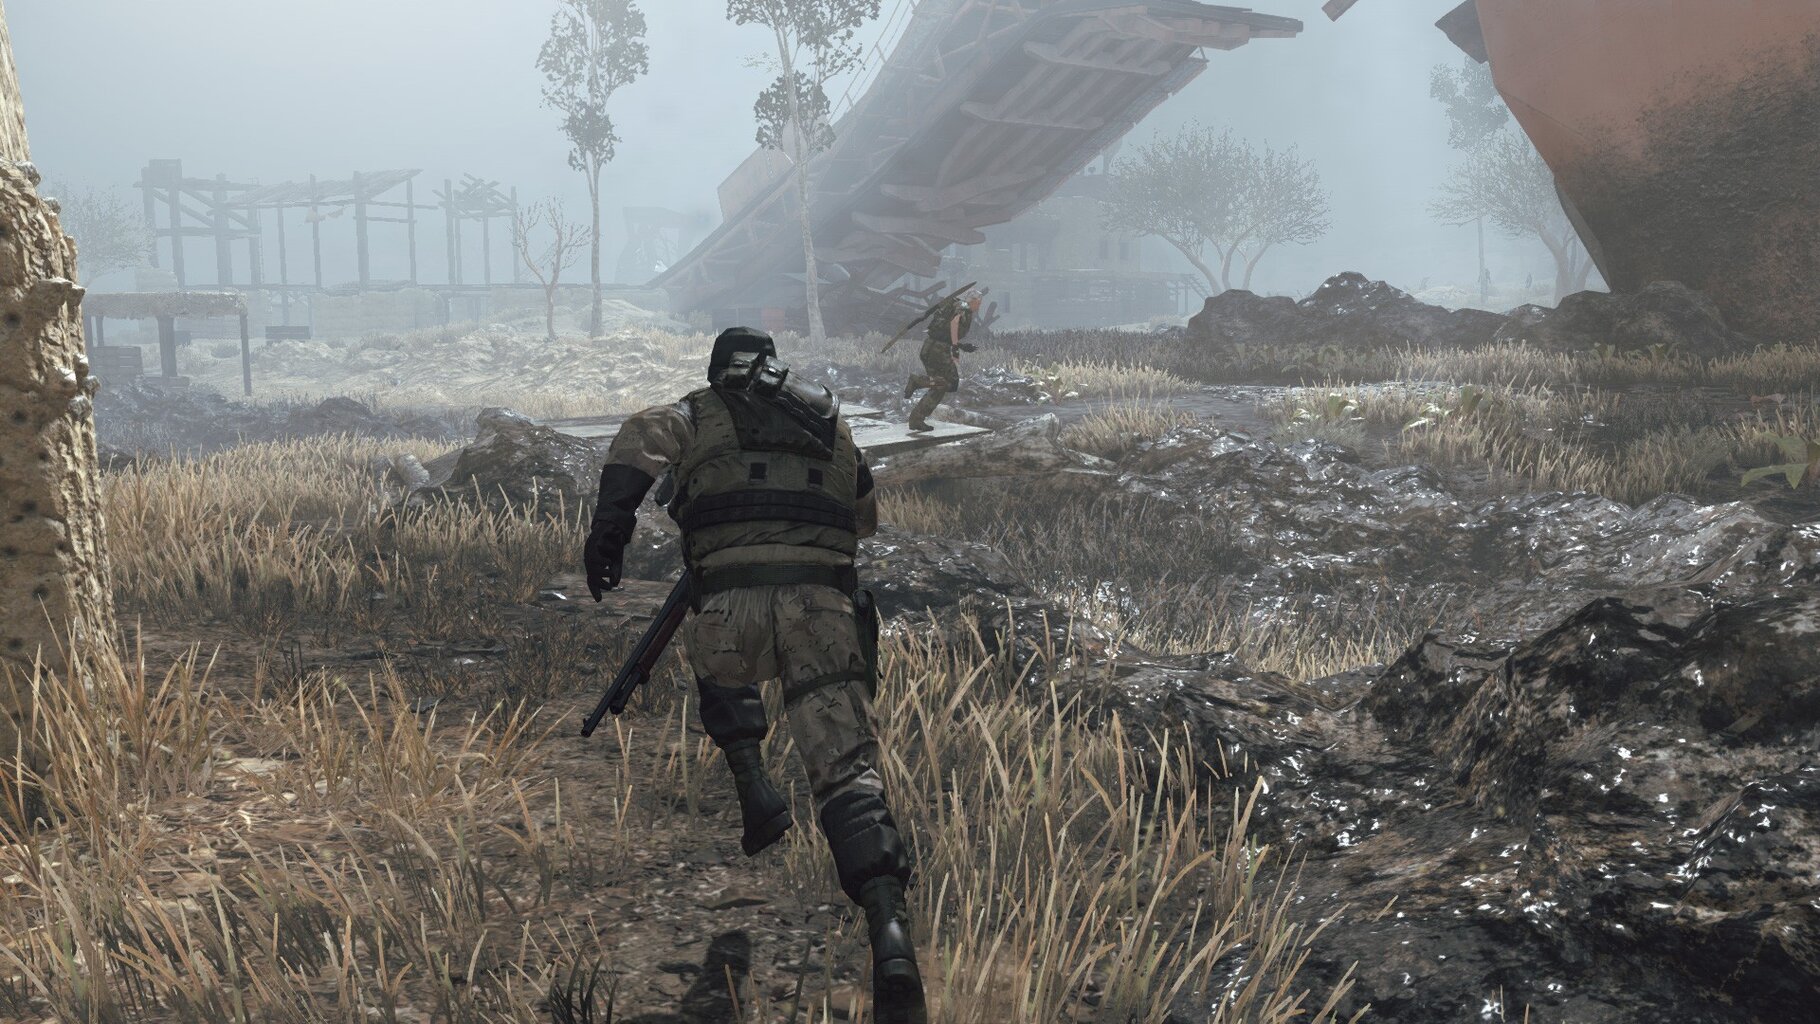 Metal Gear Survive, Xbox One kaina ir informacija | Kompiuteriniai žaidimai | pigu.lt